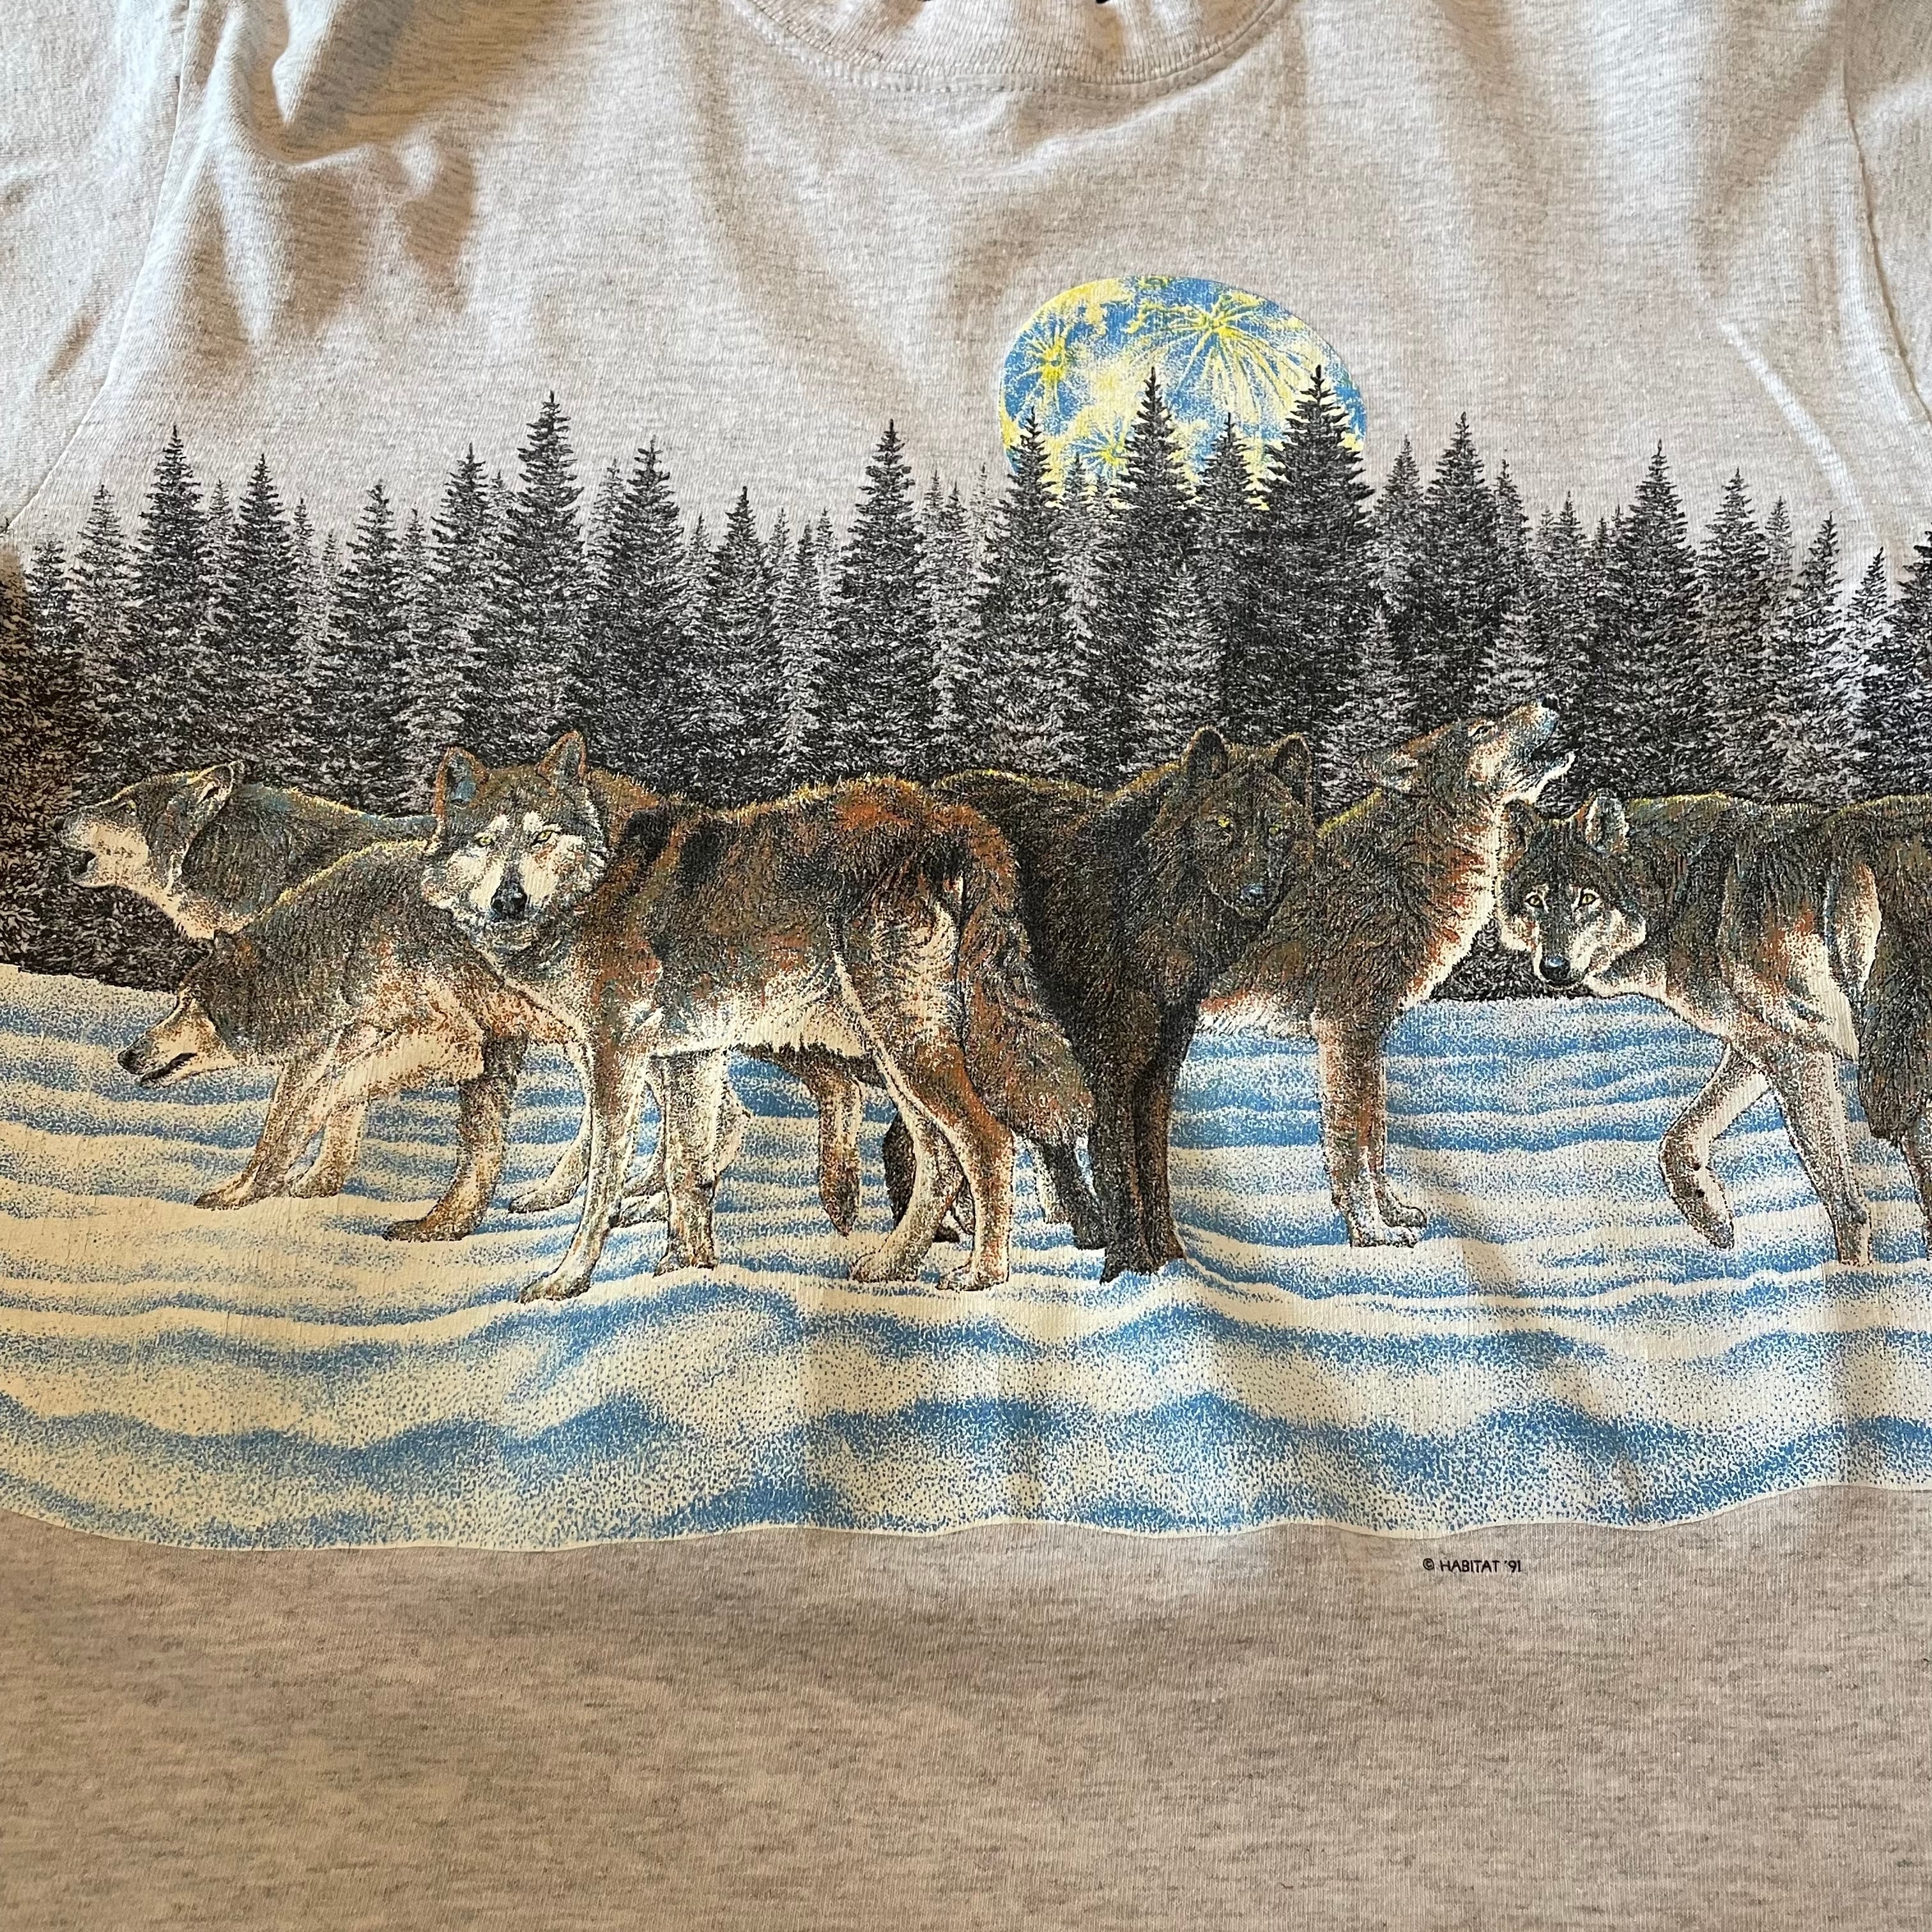 CALCRU】90s USA製 アニマル オオカミ 両面 ビッグプリントTシャツ